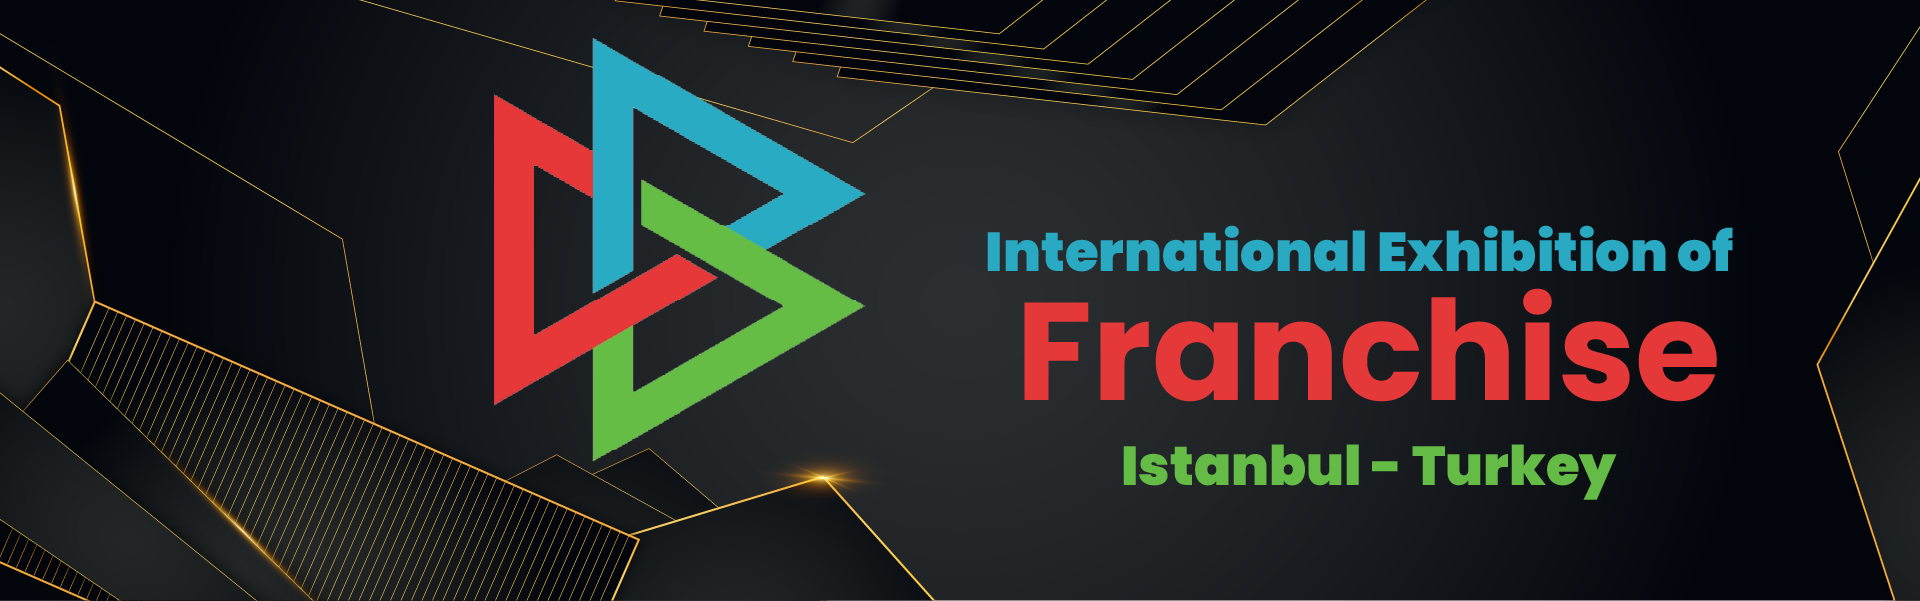 Istanbul international Franchise exhibition